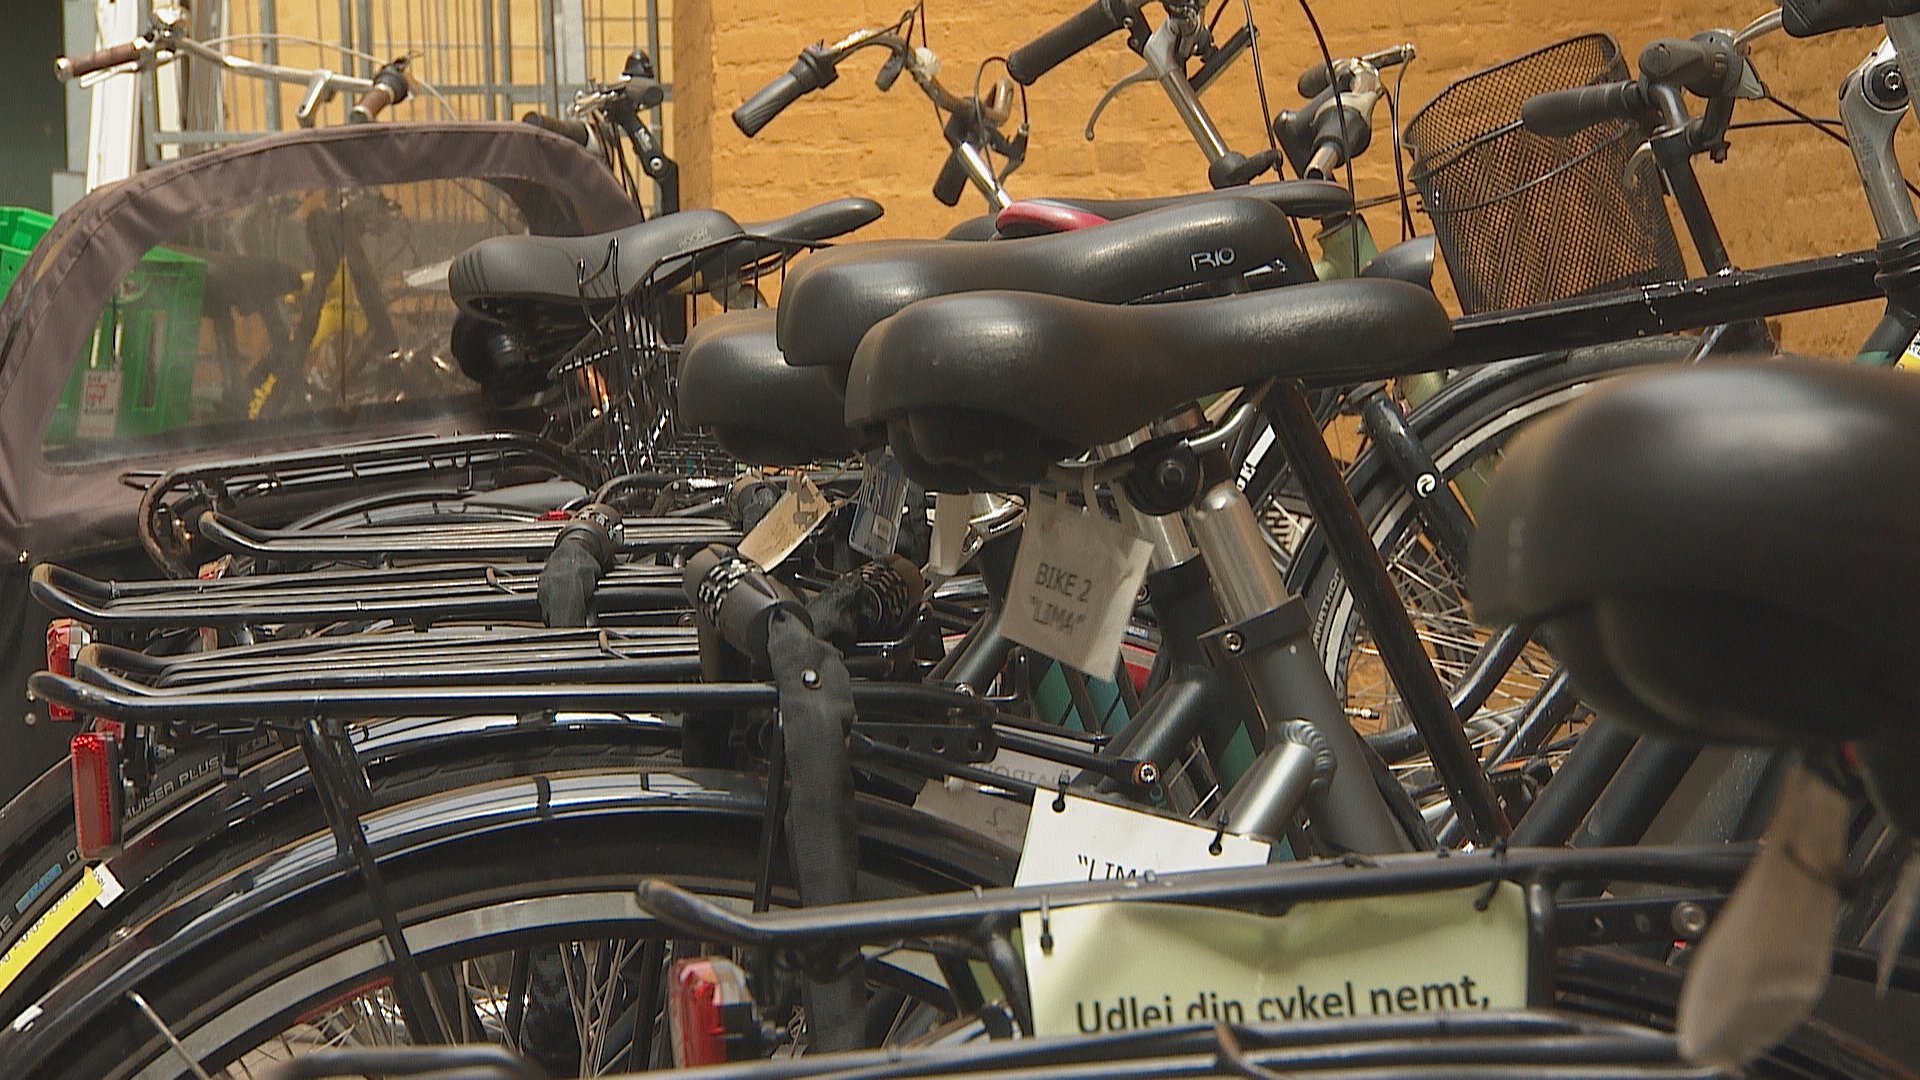 Ny ordning: Udlej cykel og gør forskel for klimaet | TV 2 Kosmopol